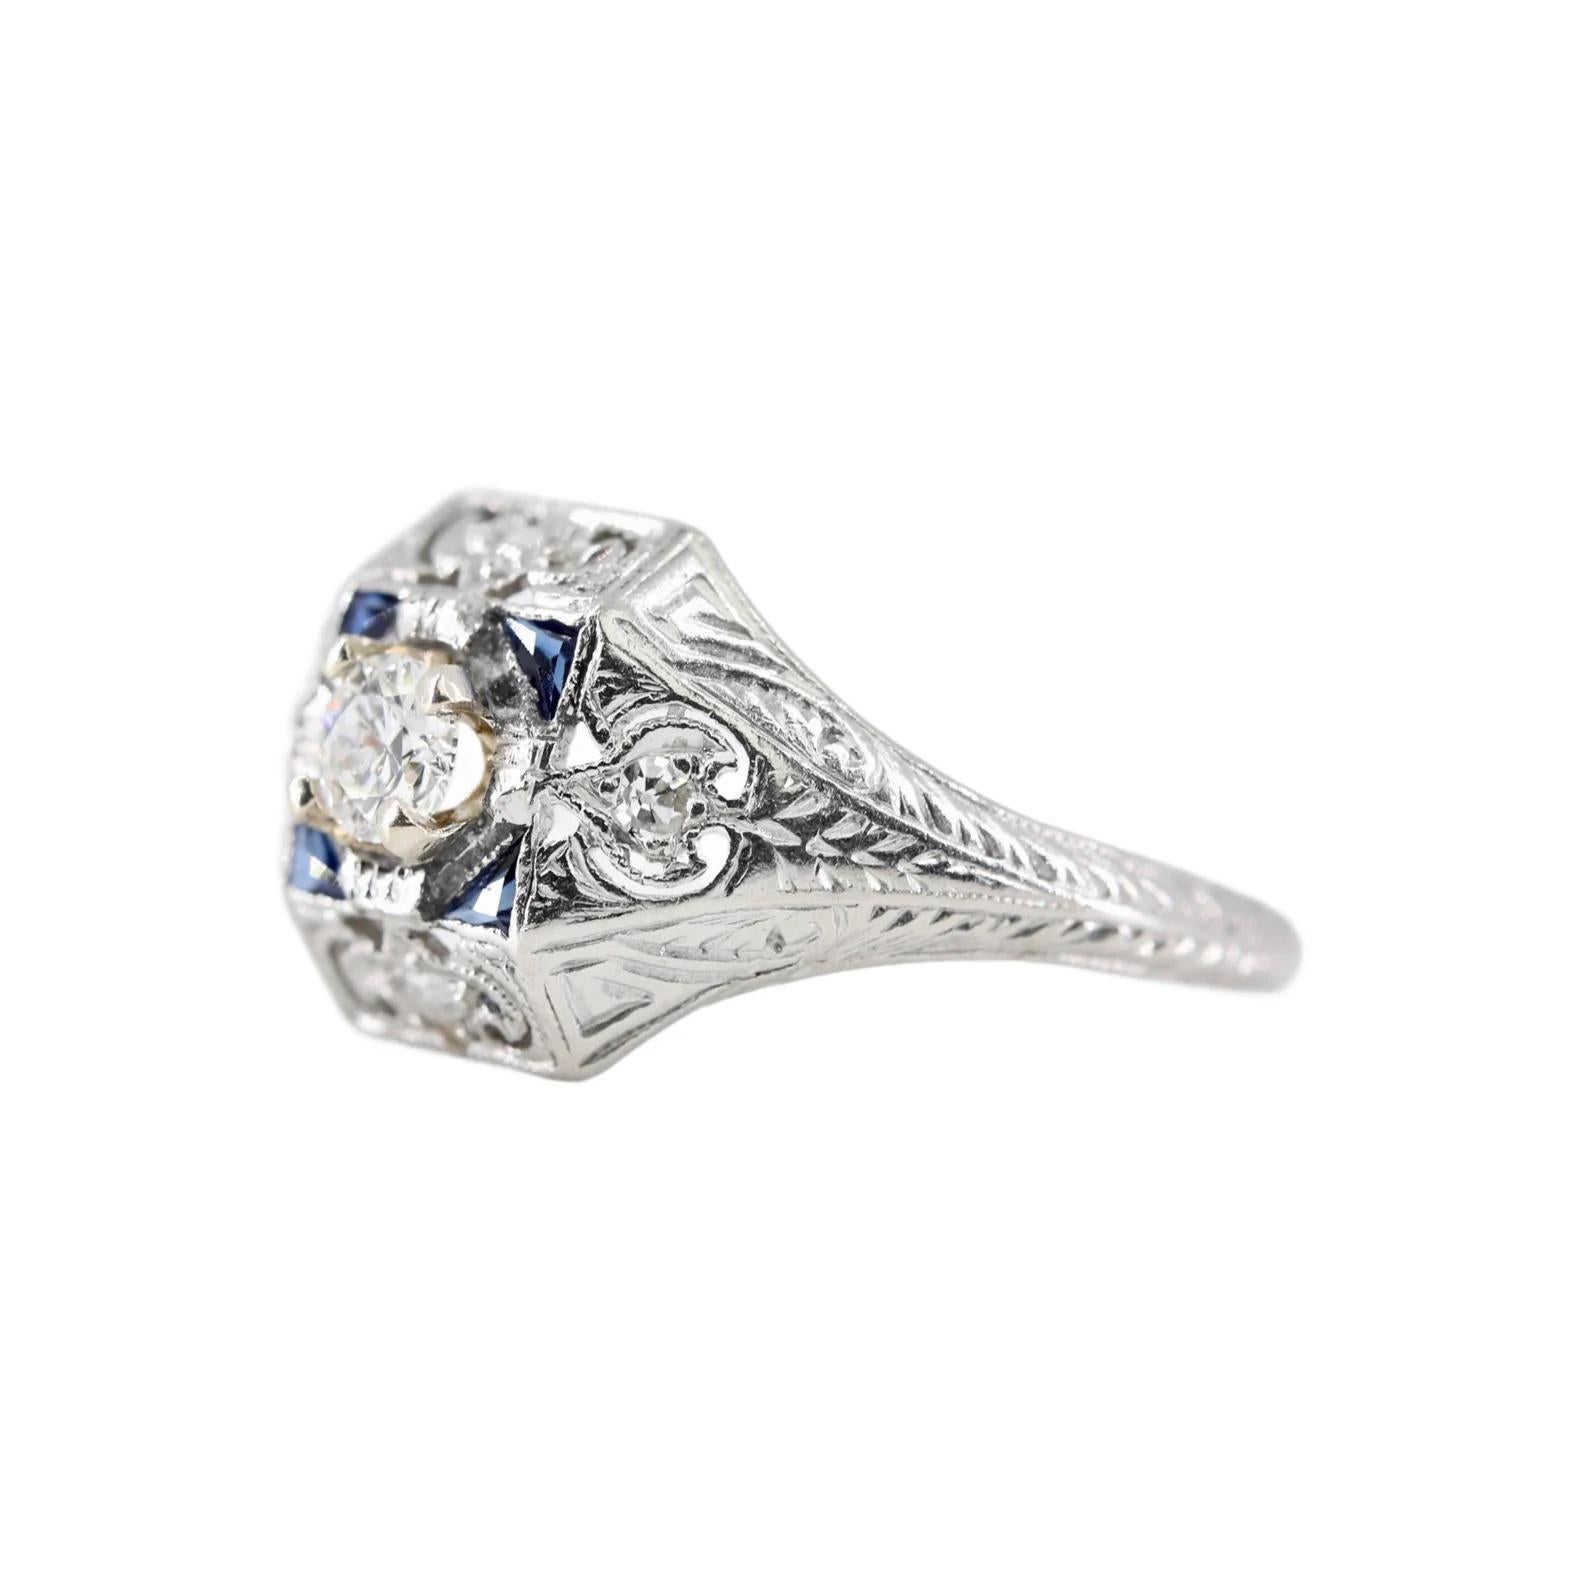 Ein Verlobungsring aus Platin mit Diamanten und Saphiren im Art-Deco-Stil. Im Mittelpunkt steht ein runder Diamant von 0,25 Karat mit der Farbe H und der Reinheit VS. Der Ring ist mit vier weiteren Diamanten von 0,04 ctw und vier Saphiren im